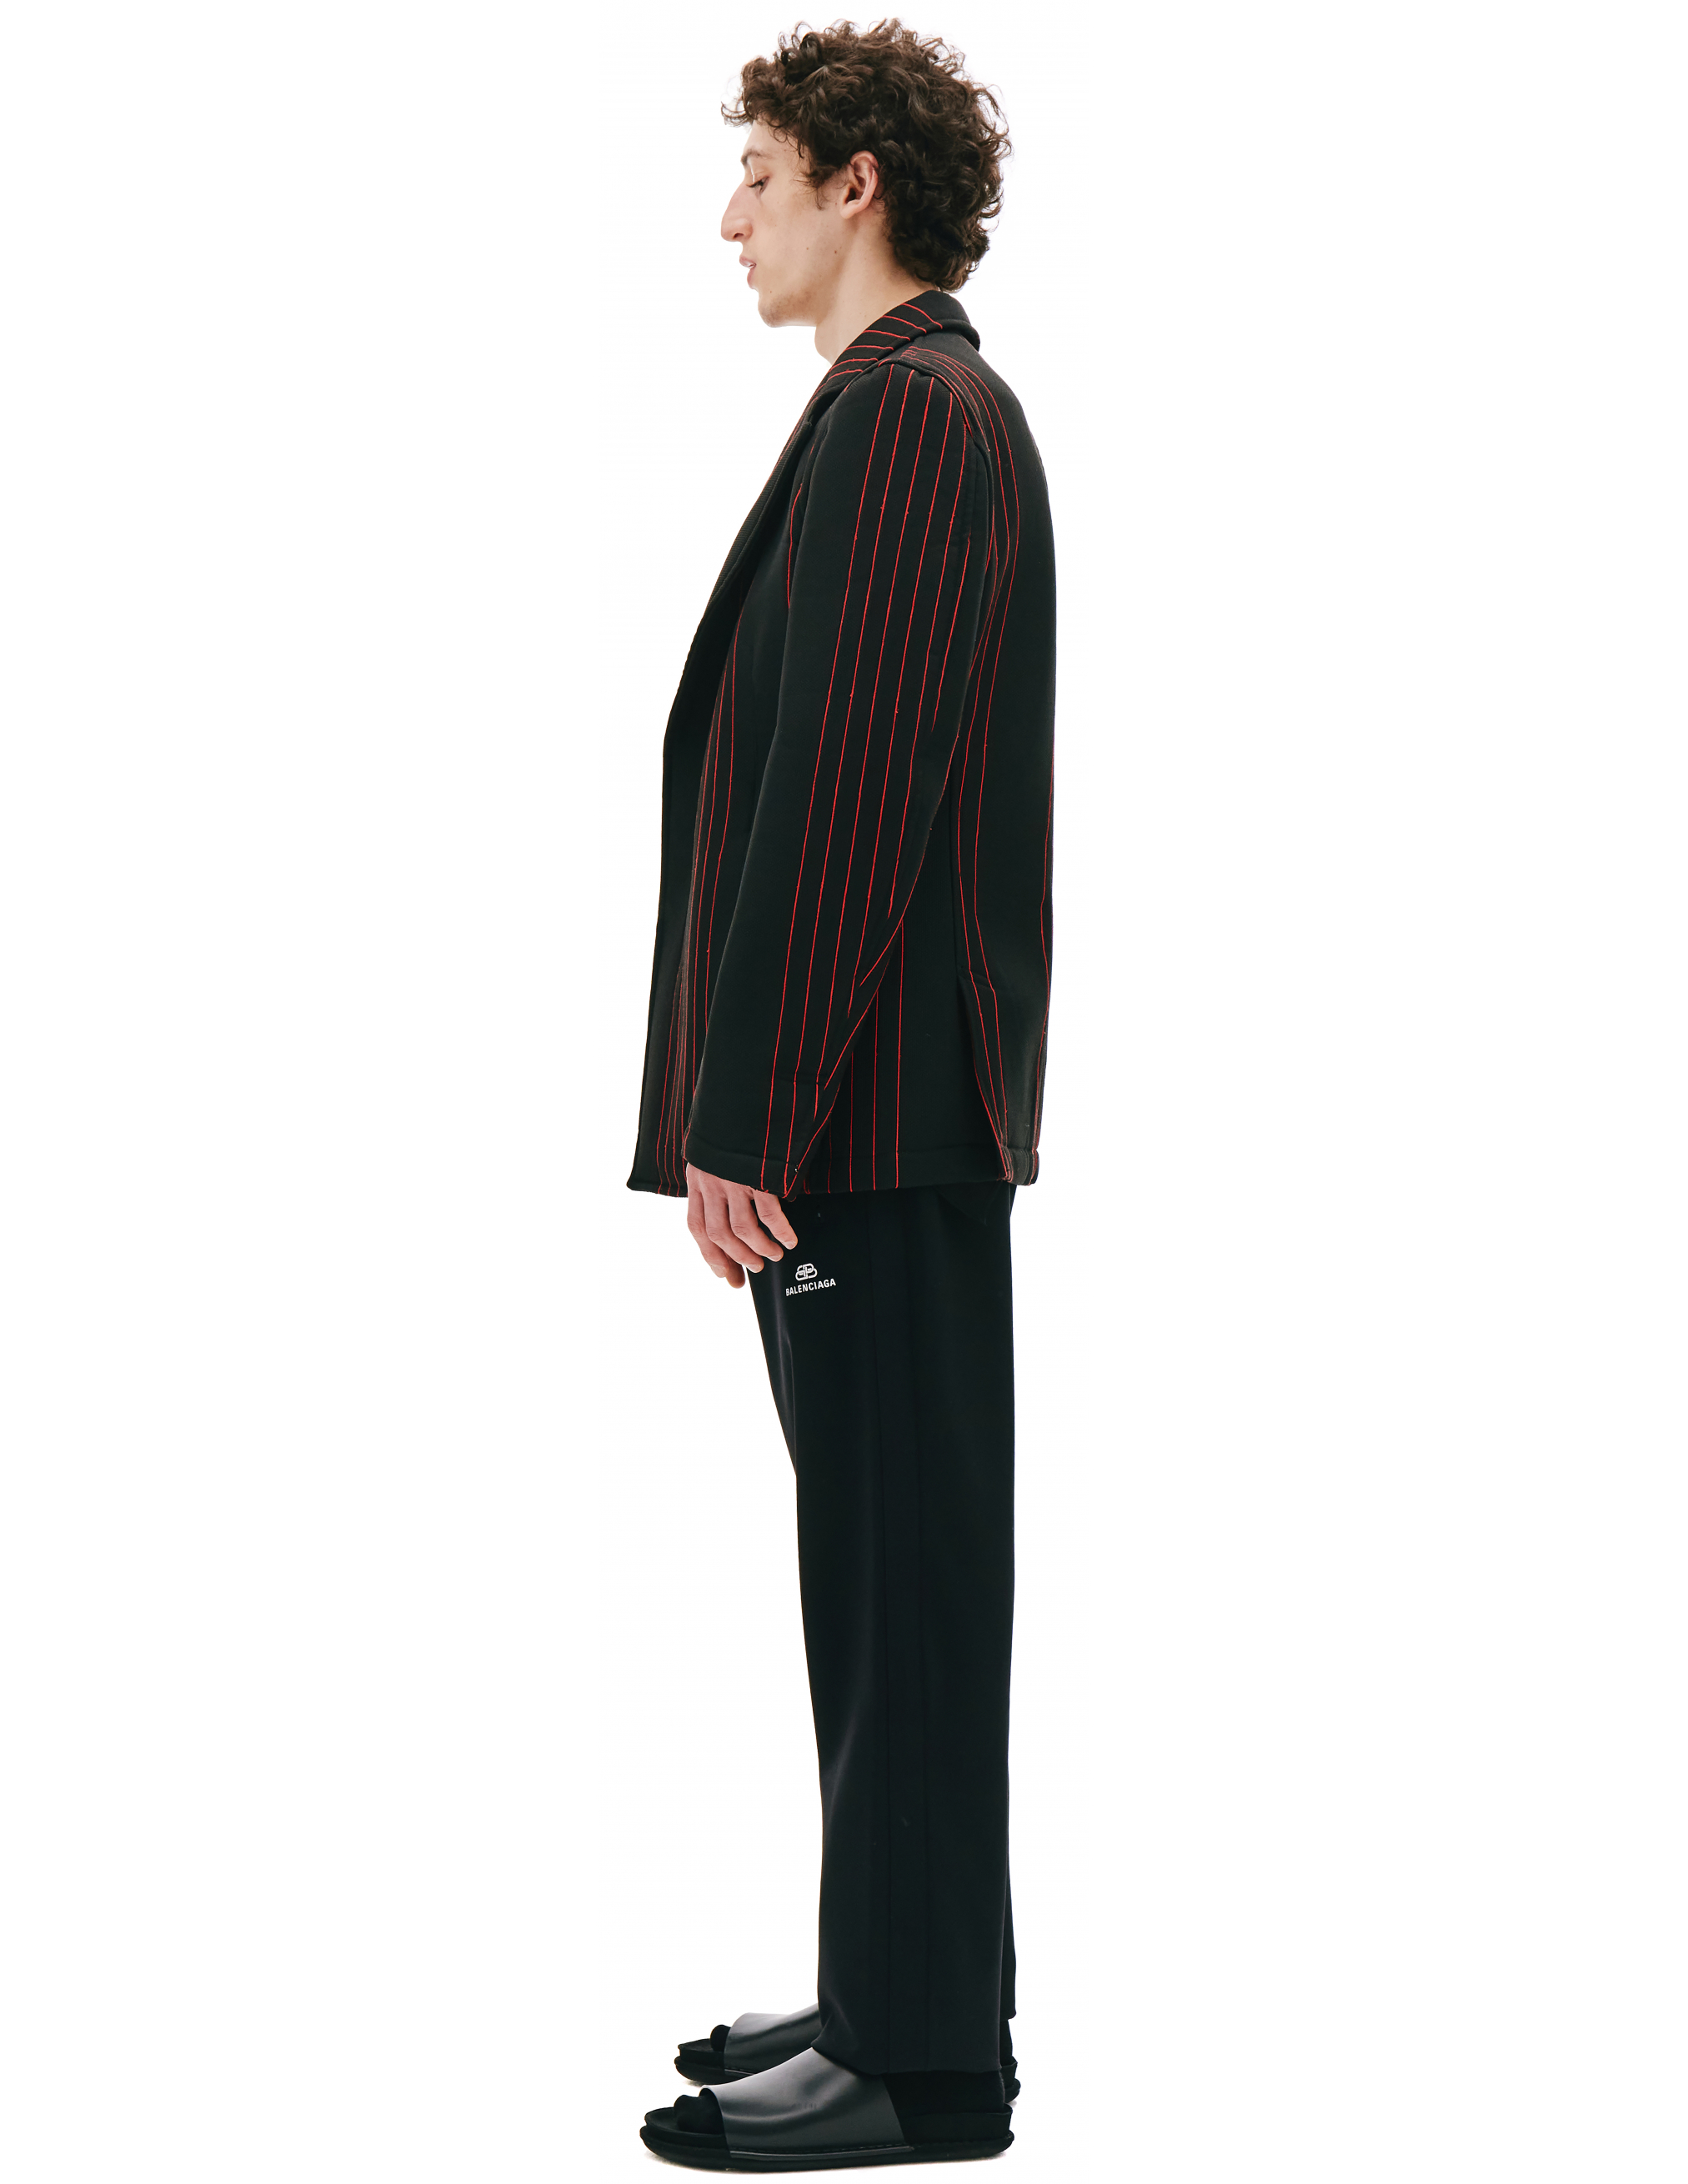 Черный пиджак в красную полоску - Comme des Garcons Homme plus PG-J058-051-1 Фото 2